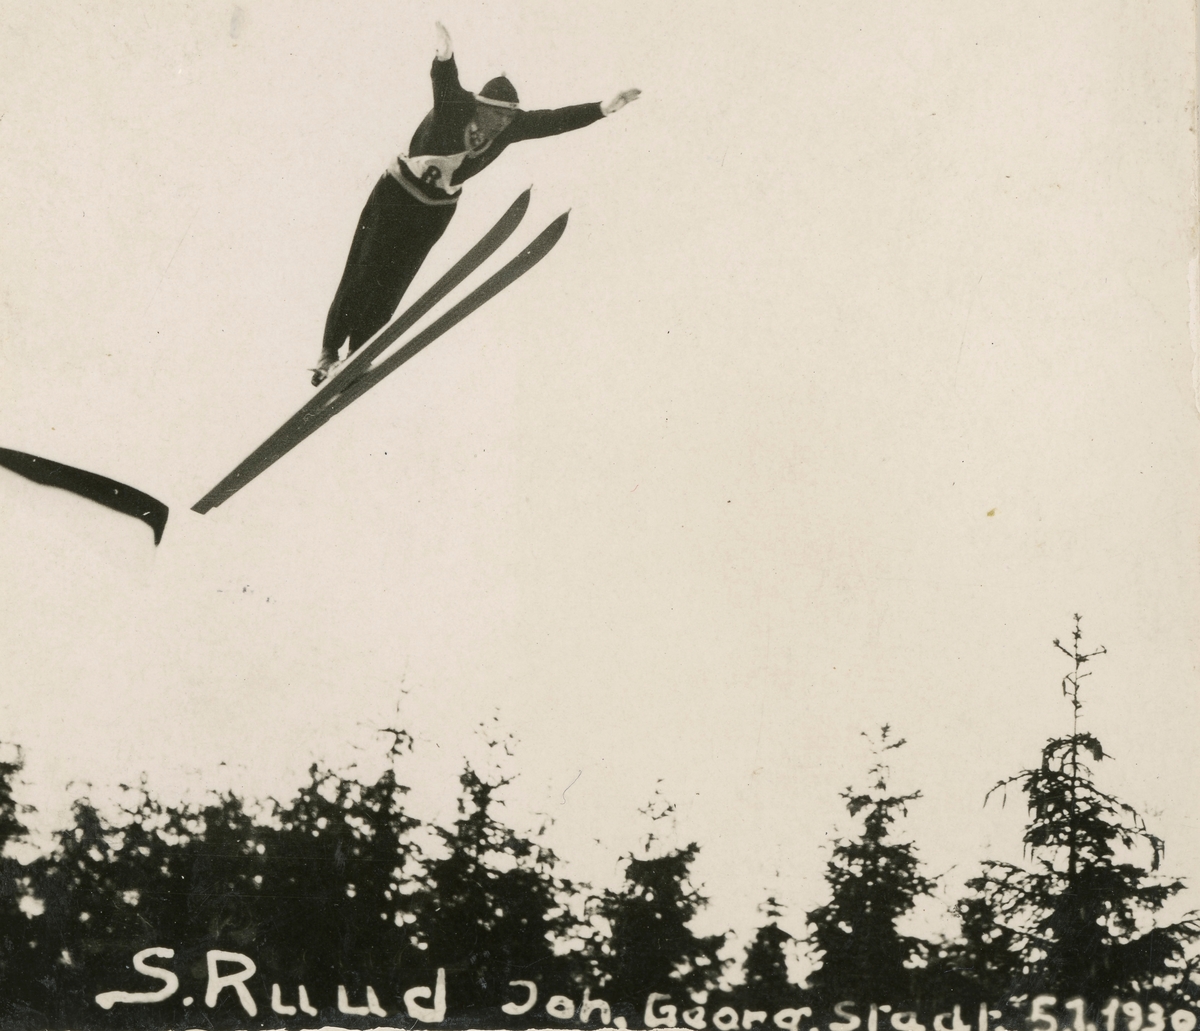 Athlete Sigmund Ruud jumping at Johangeorgenstadt